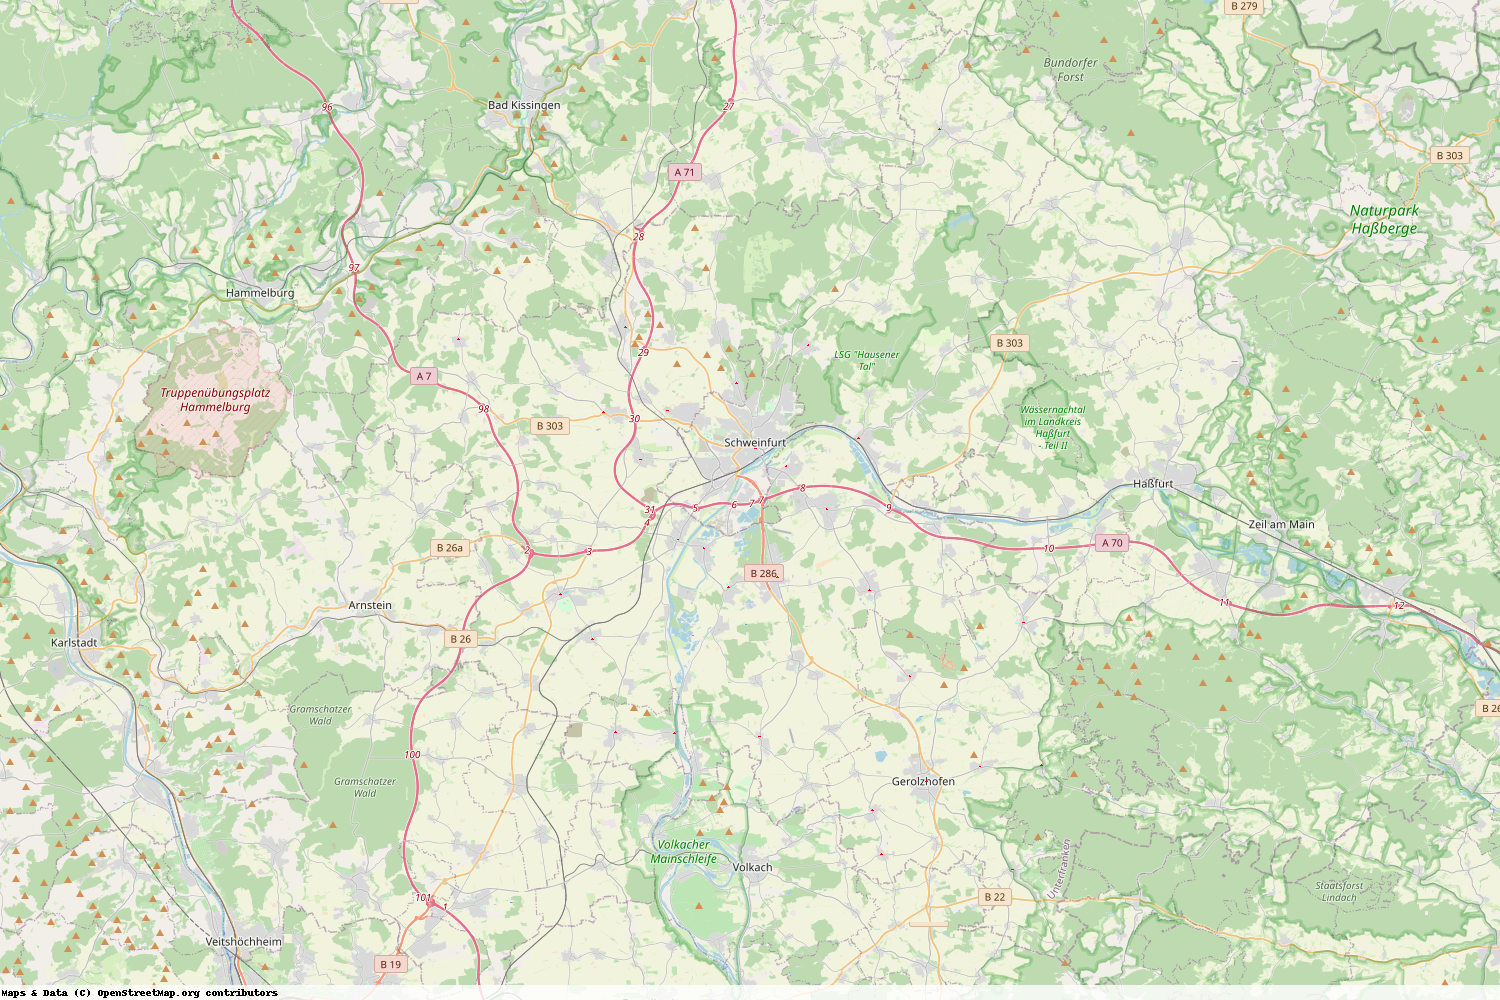 Ist gerade Stromausfall in Bayern - Schweinfurt?